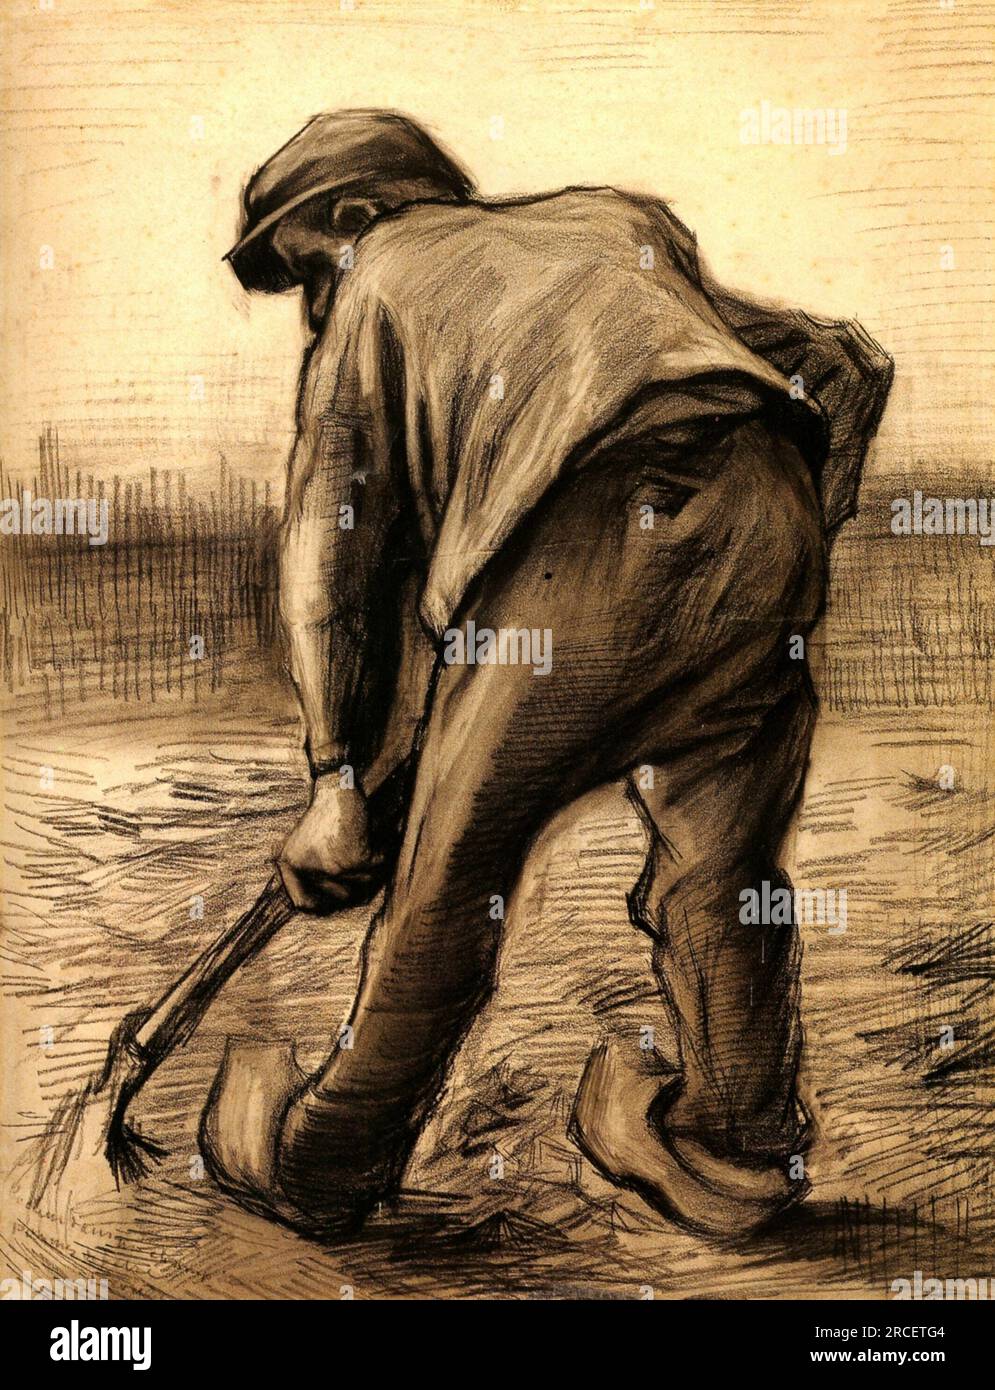 Digger in a Potato Field: February 1885; Nunen / Nuenen, Netherlands by ...